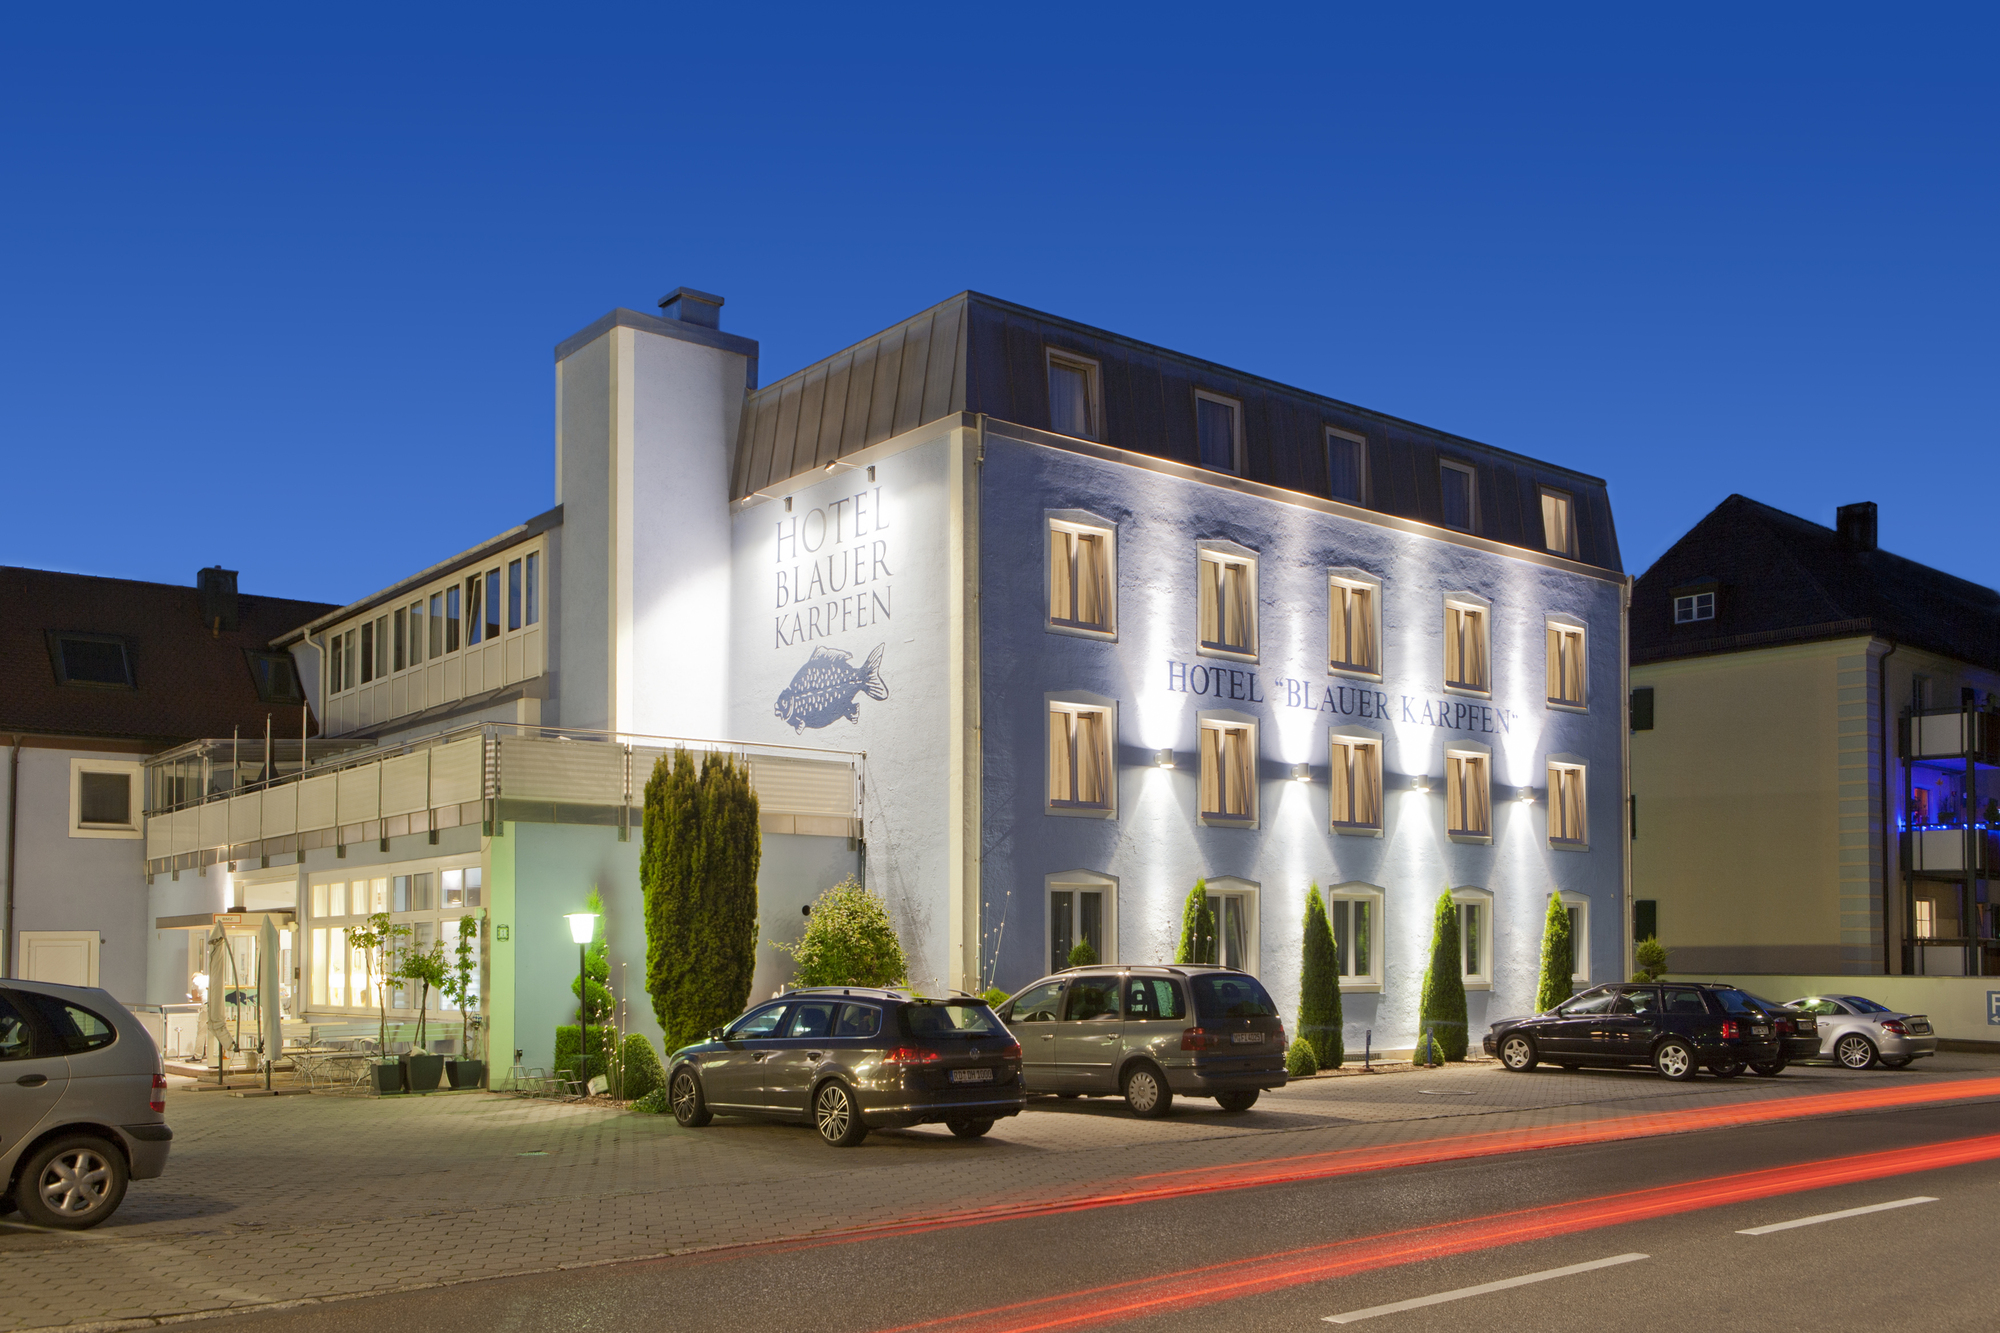 Das Sporthotel blauer Karpfen, Oberschleißheim bei München